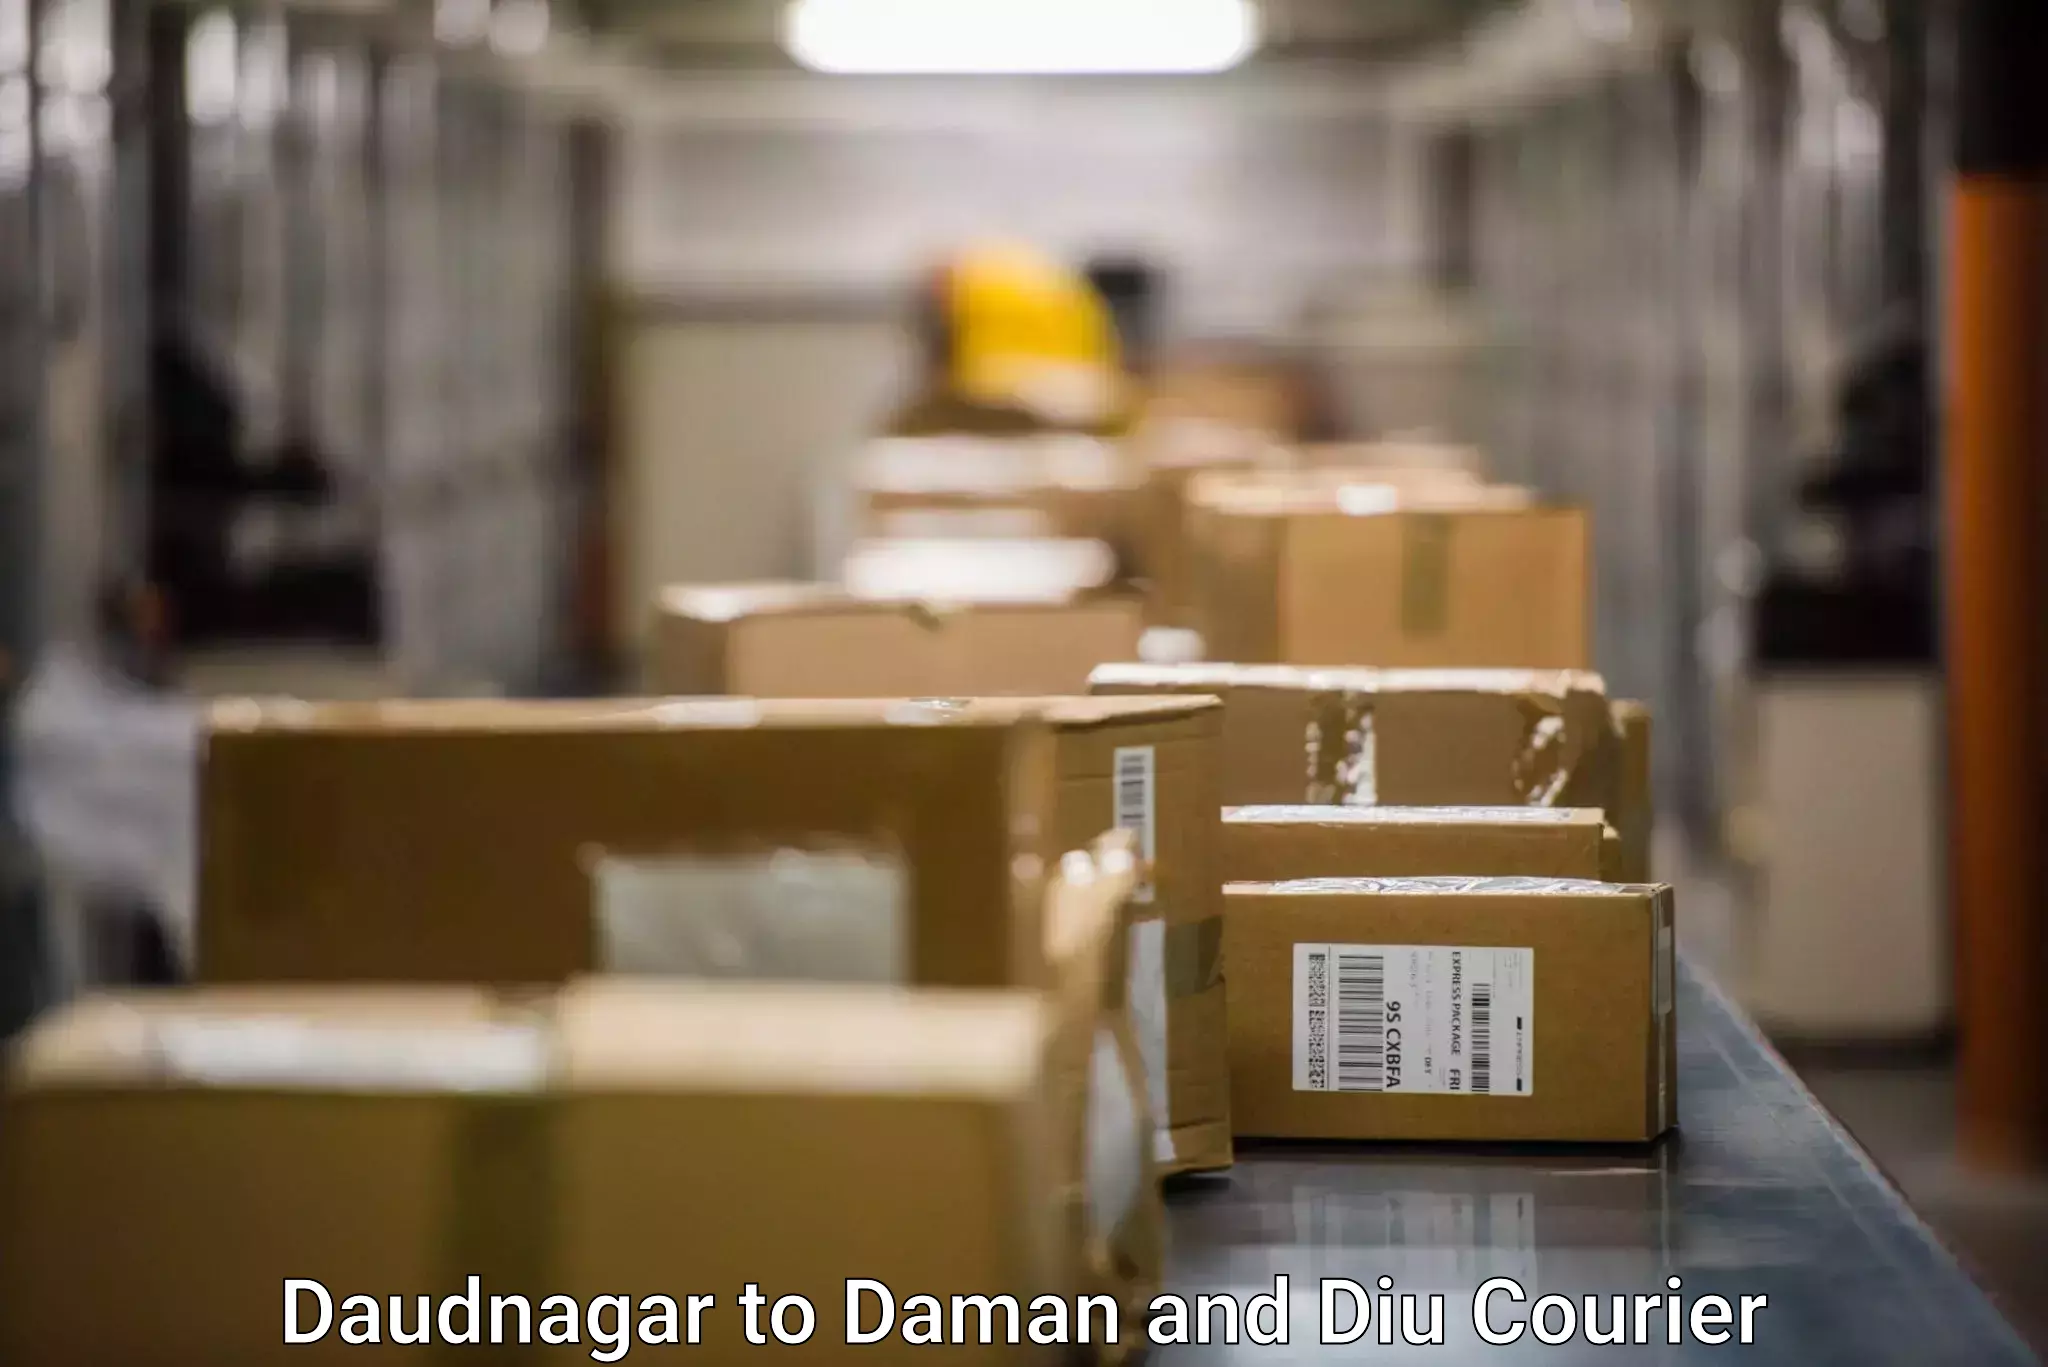 Efficient freight service Daudnagar to Daman and Diu